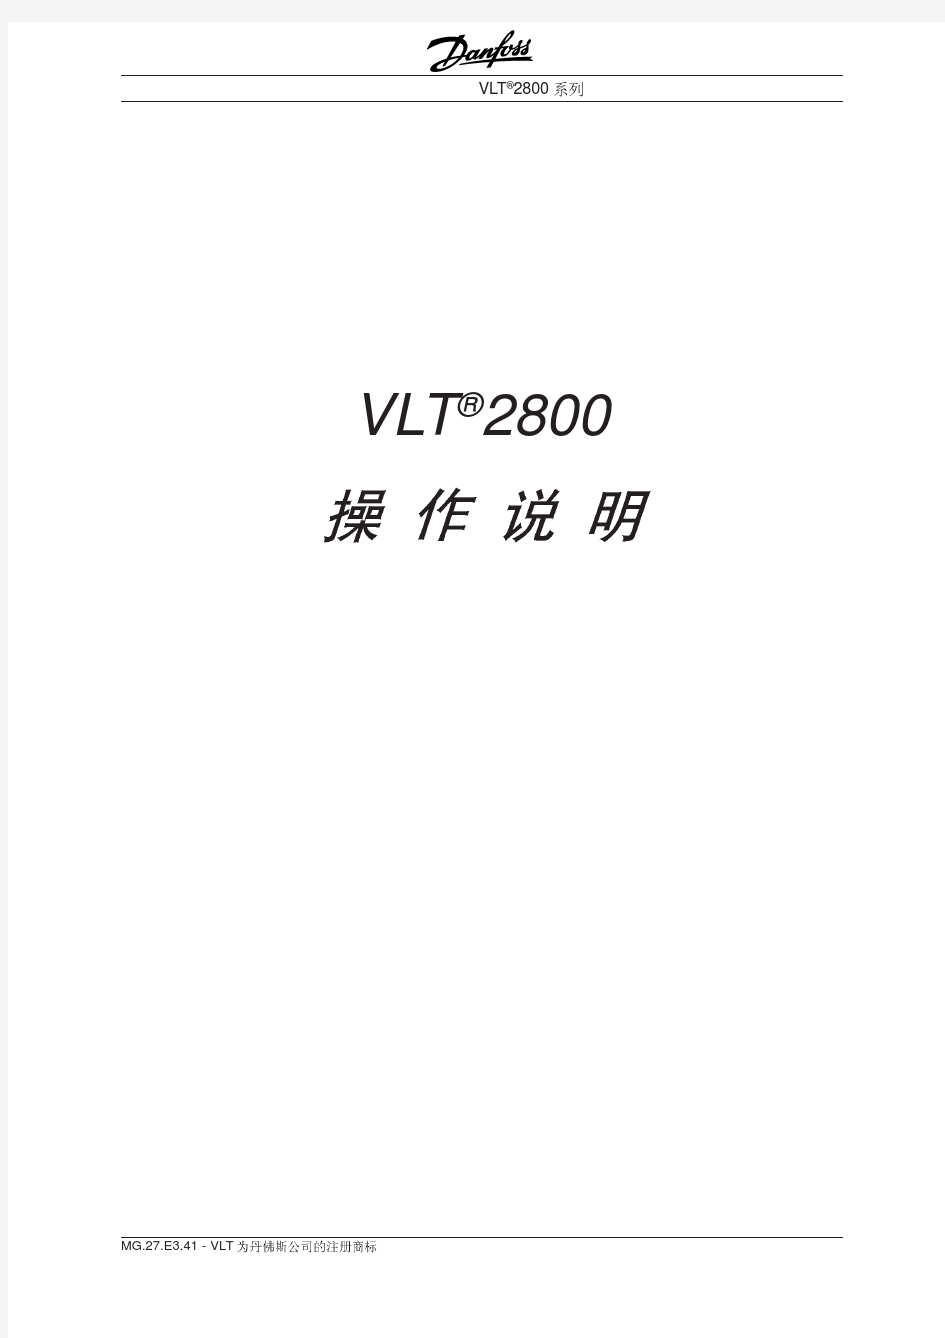 丹佛斯变频器(Danfoss) VLT2800 中文操作手册